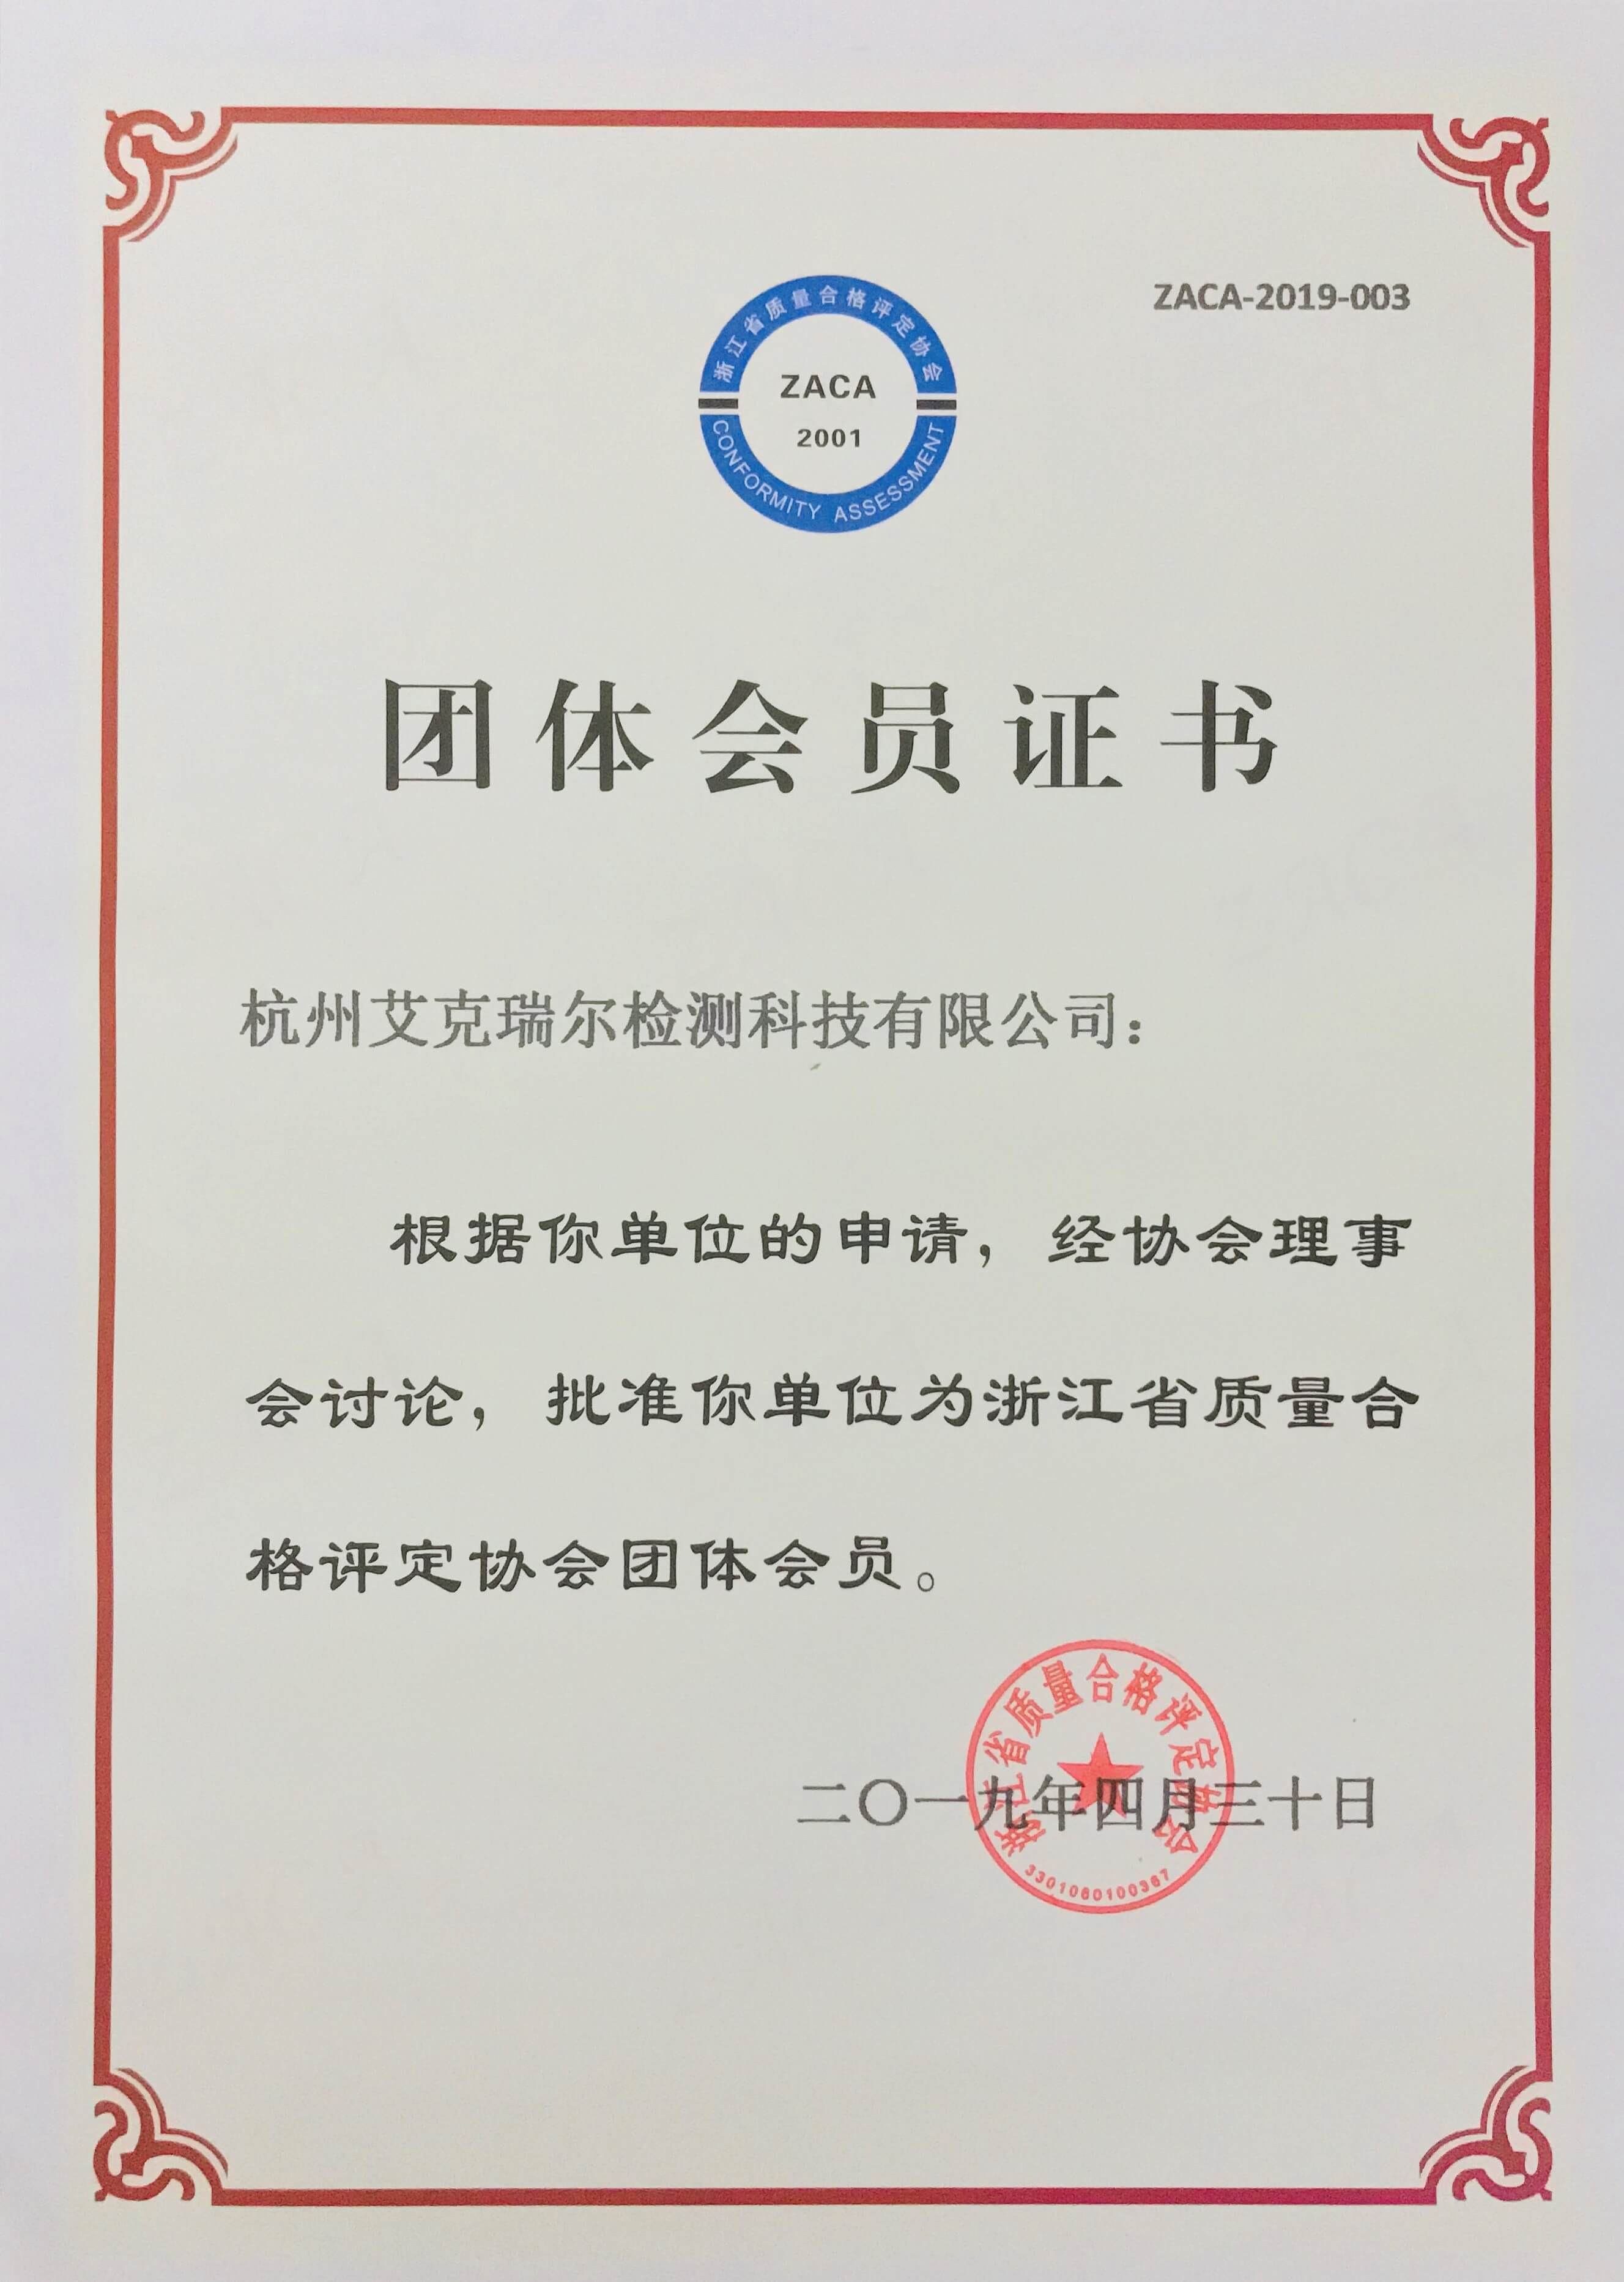 祝贺艾克瑞尔成为浙江省质量合格评定协会团体会员